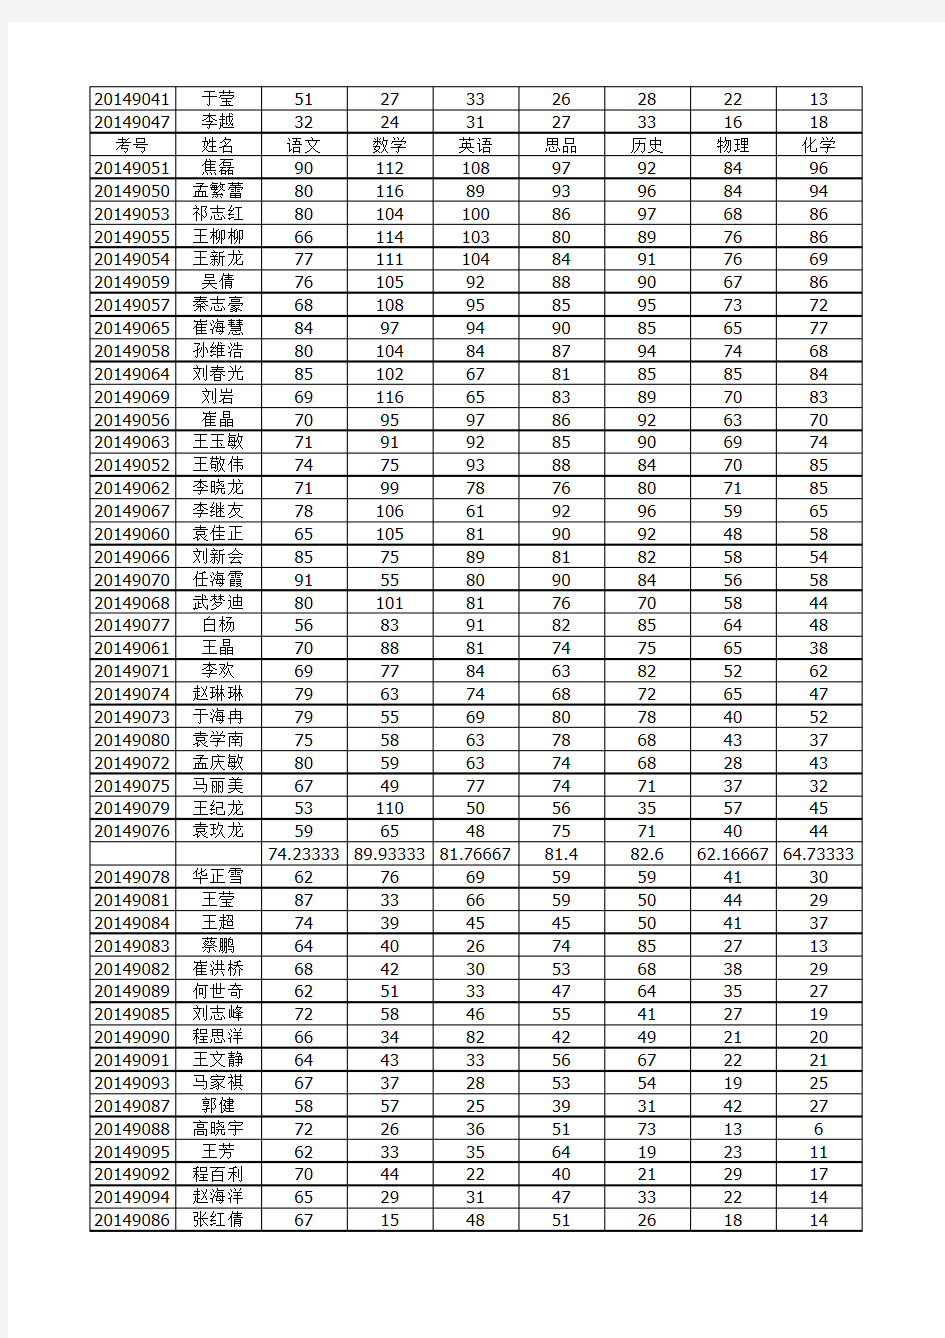 九年级期末考试成绩单2015.1